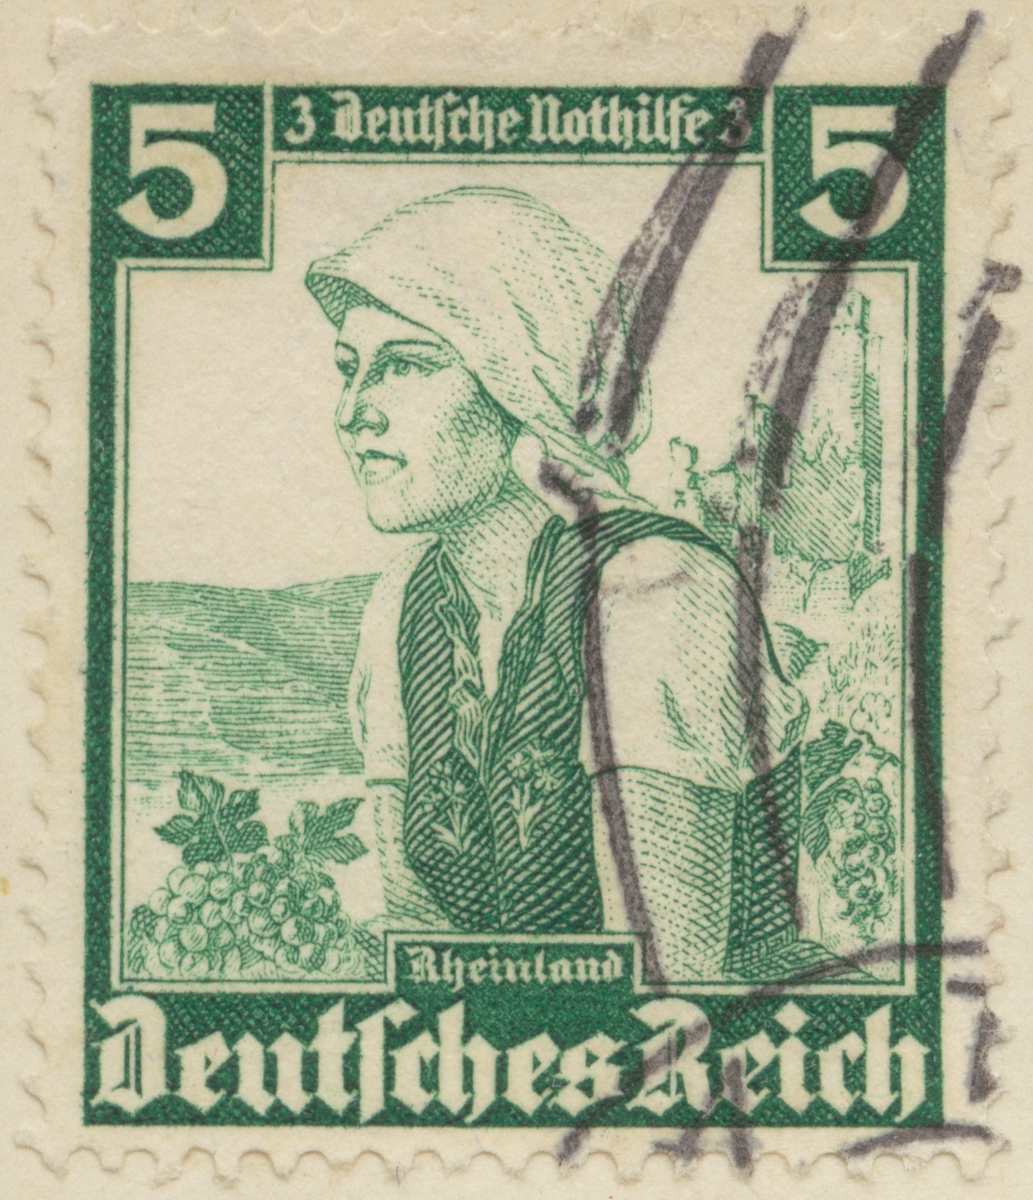 Frimärke ur Gösta Bodmans filatelistiska motivsamling, påbörjad 1950.
Frimärke från Tyskland, 1935. Motiv av kvinnodräkt, Rheinland.